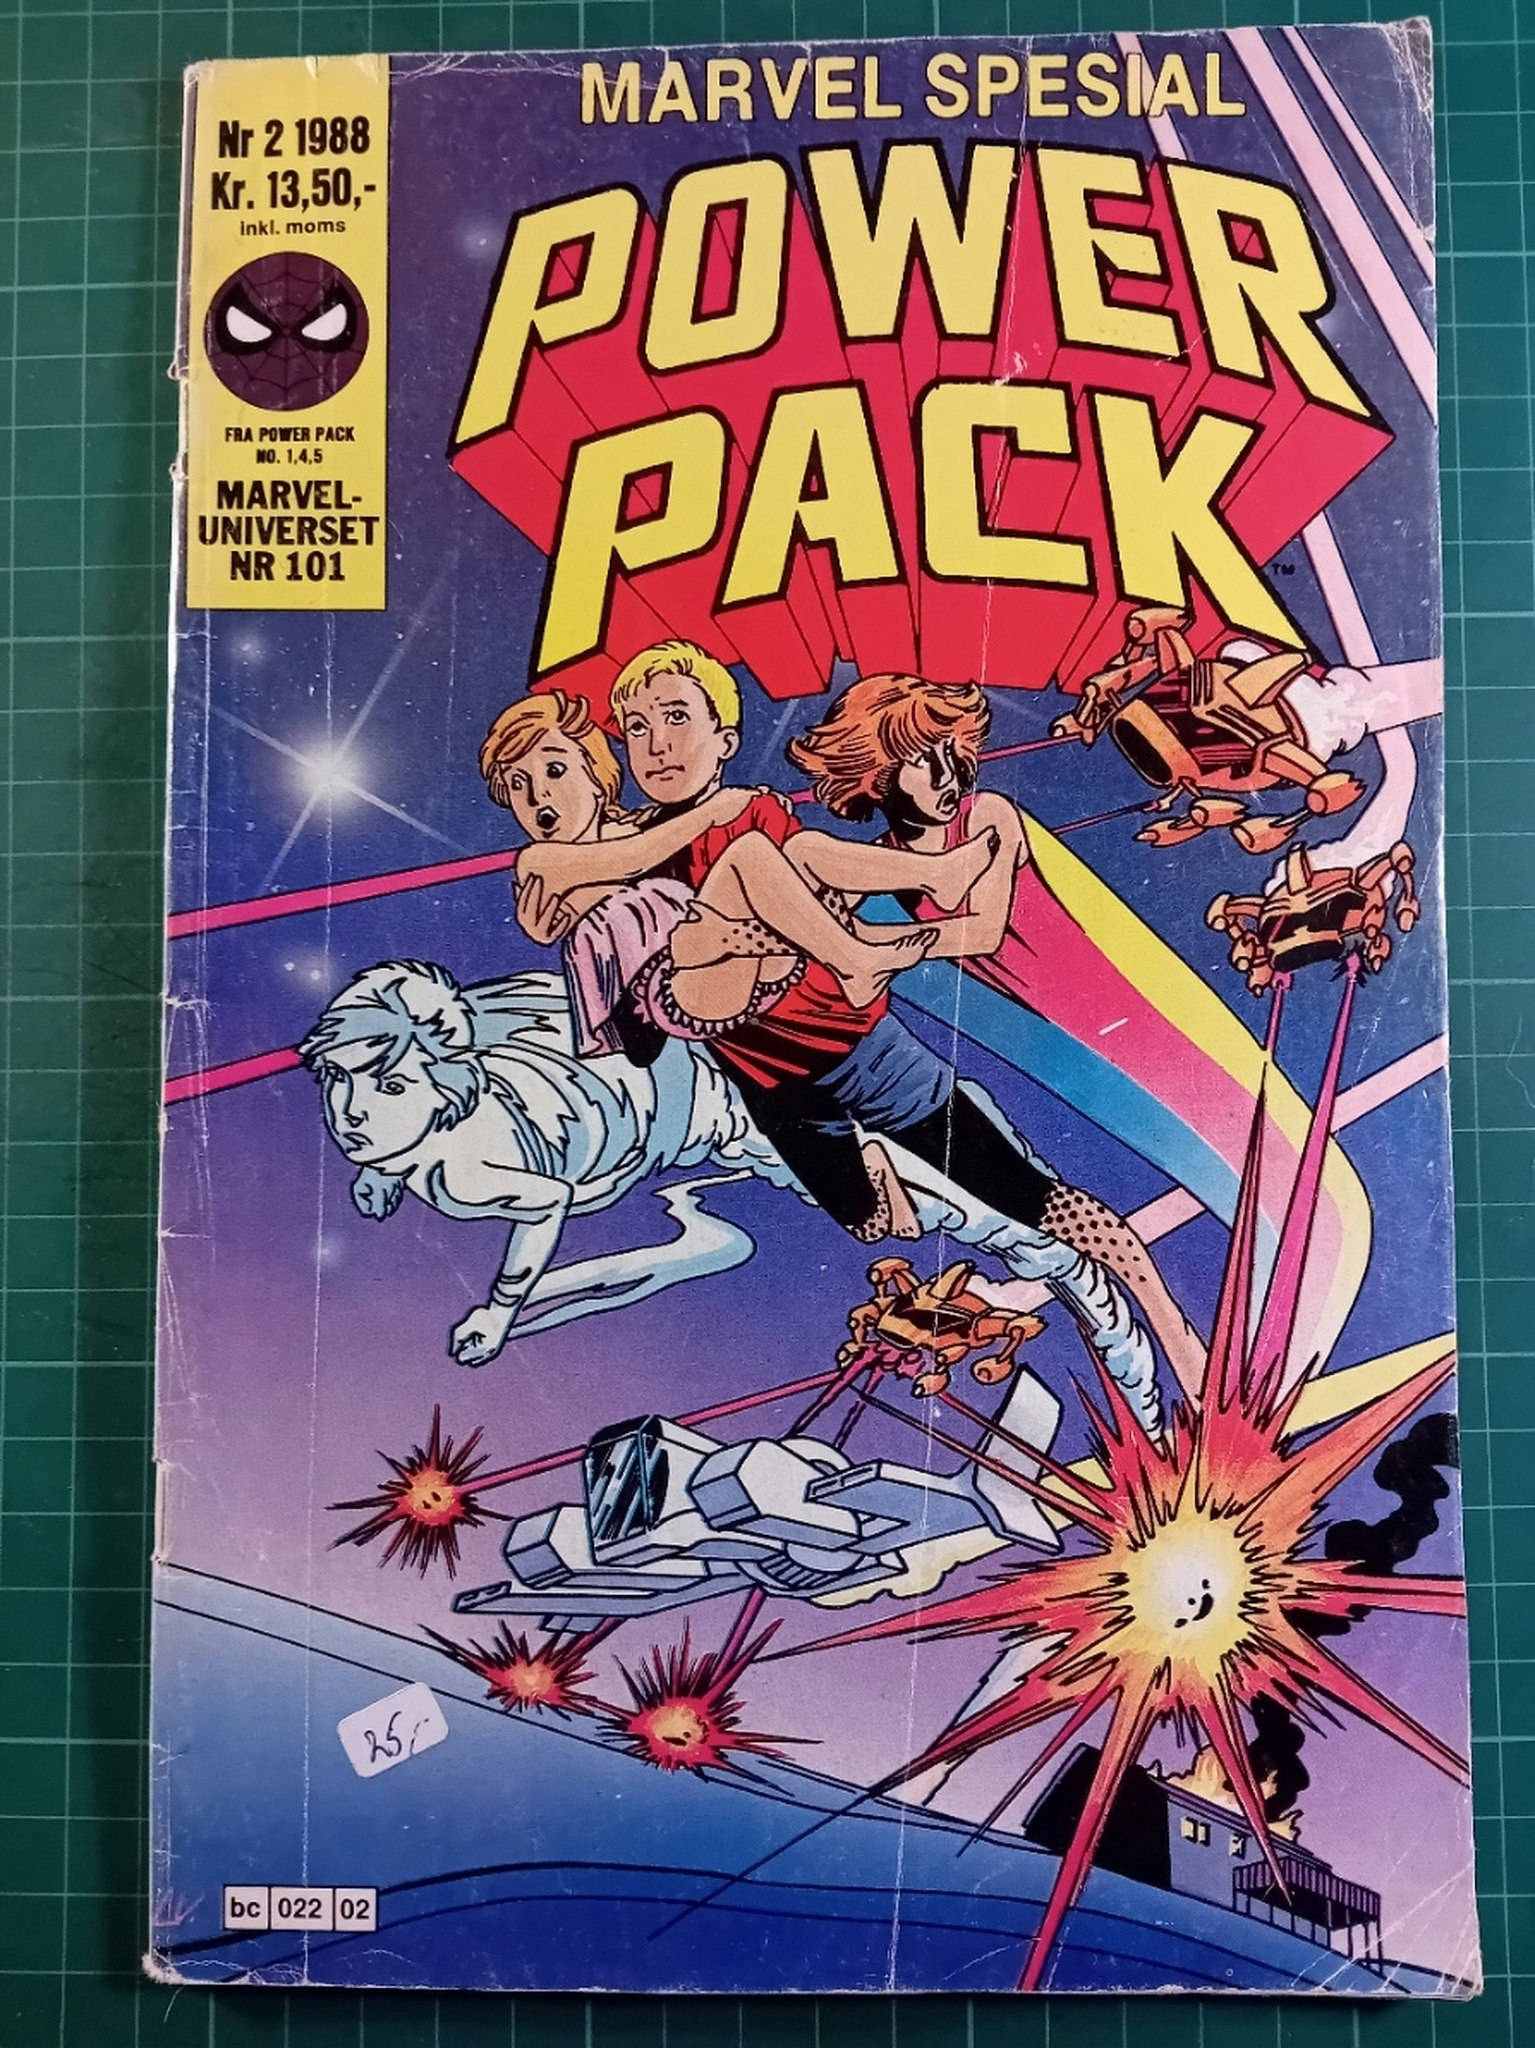 Marvel spesial 1988 - 02 Power pack